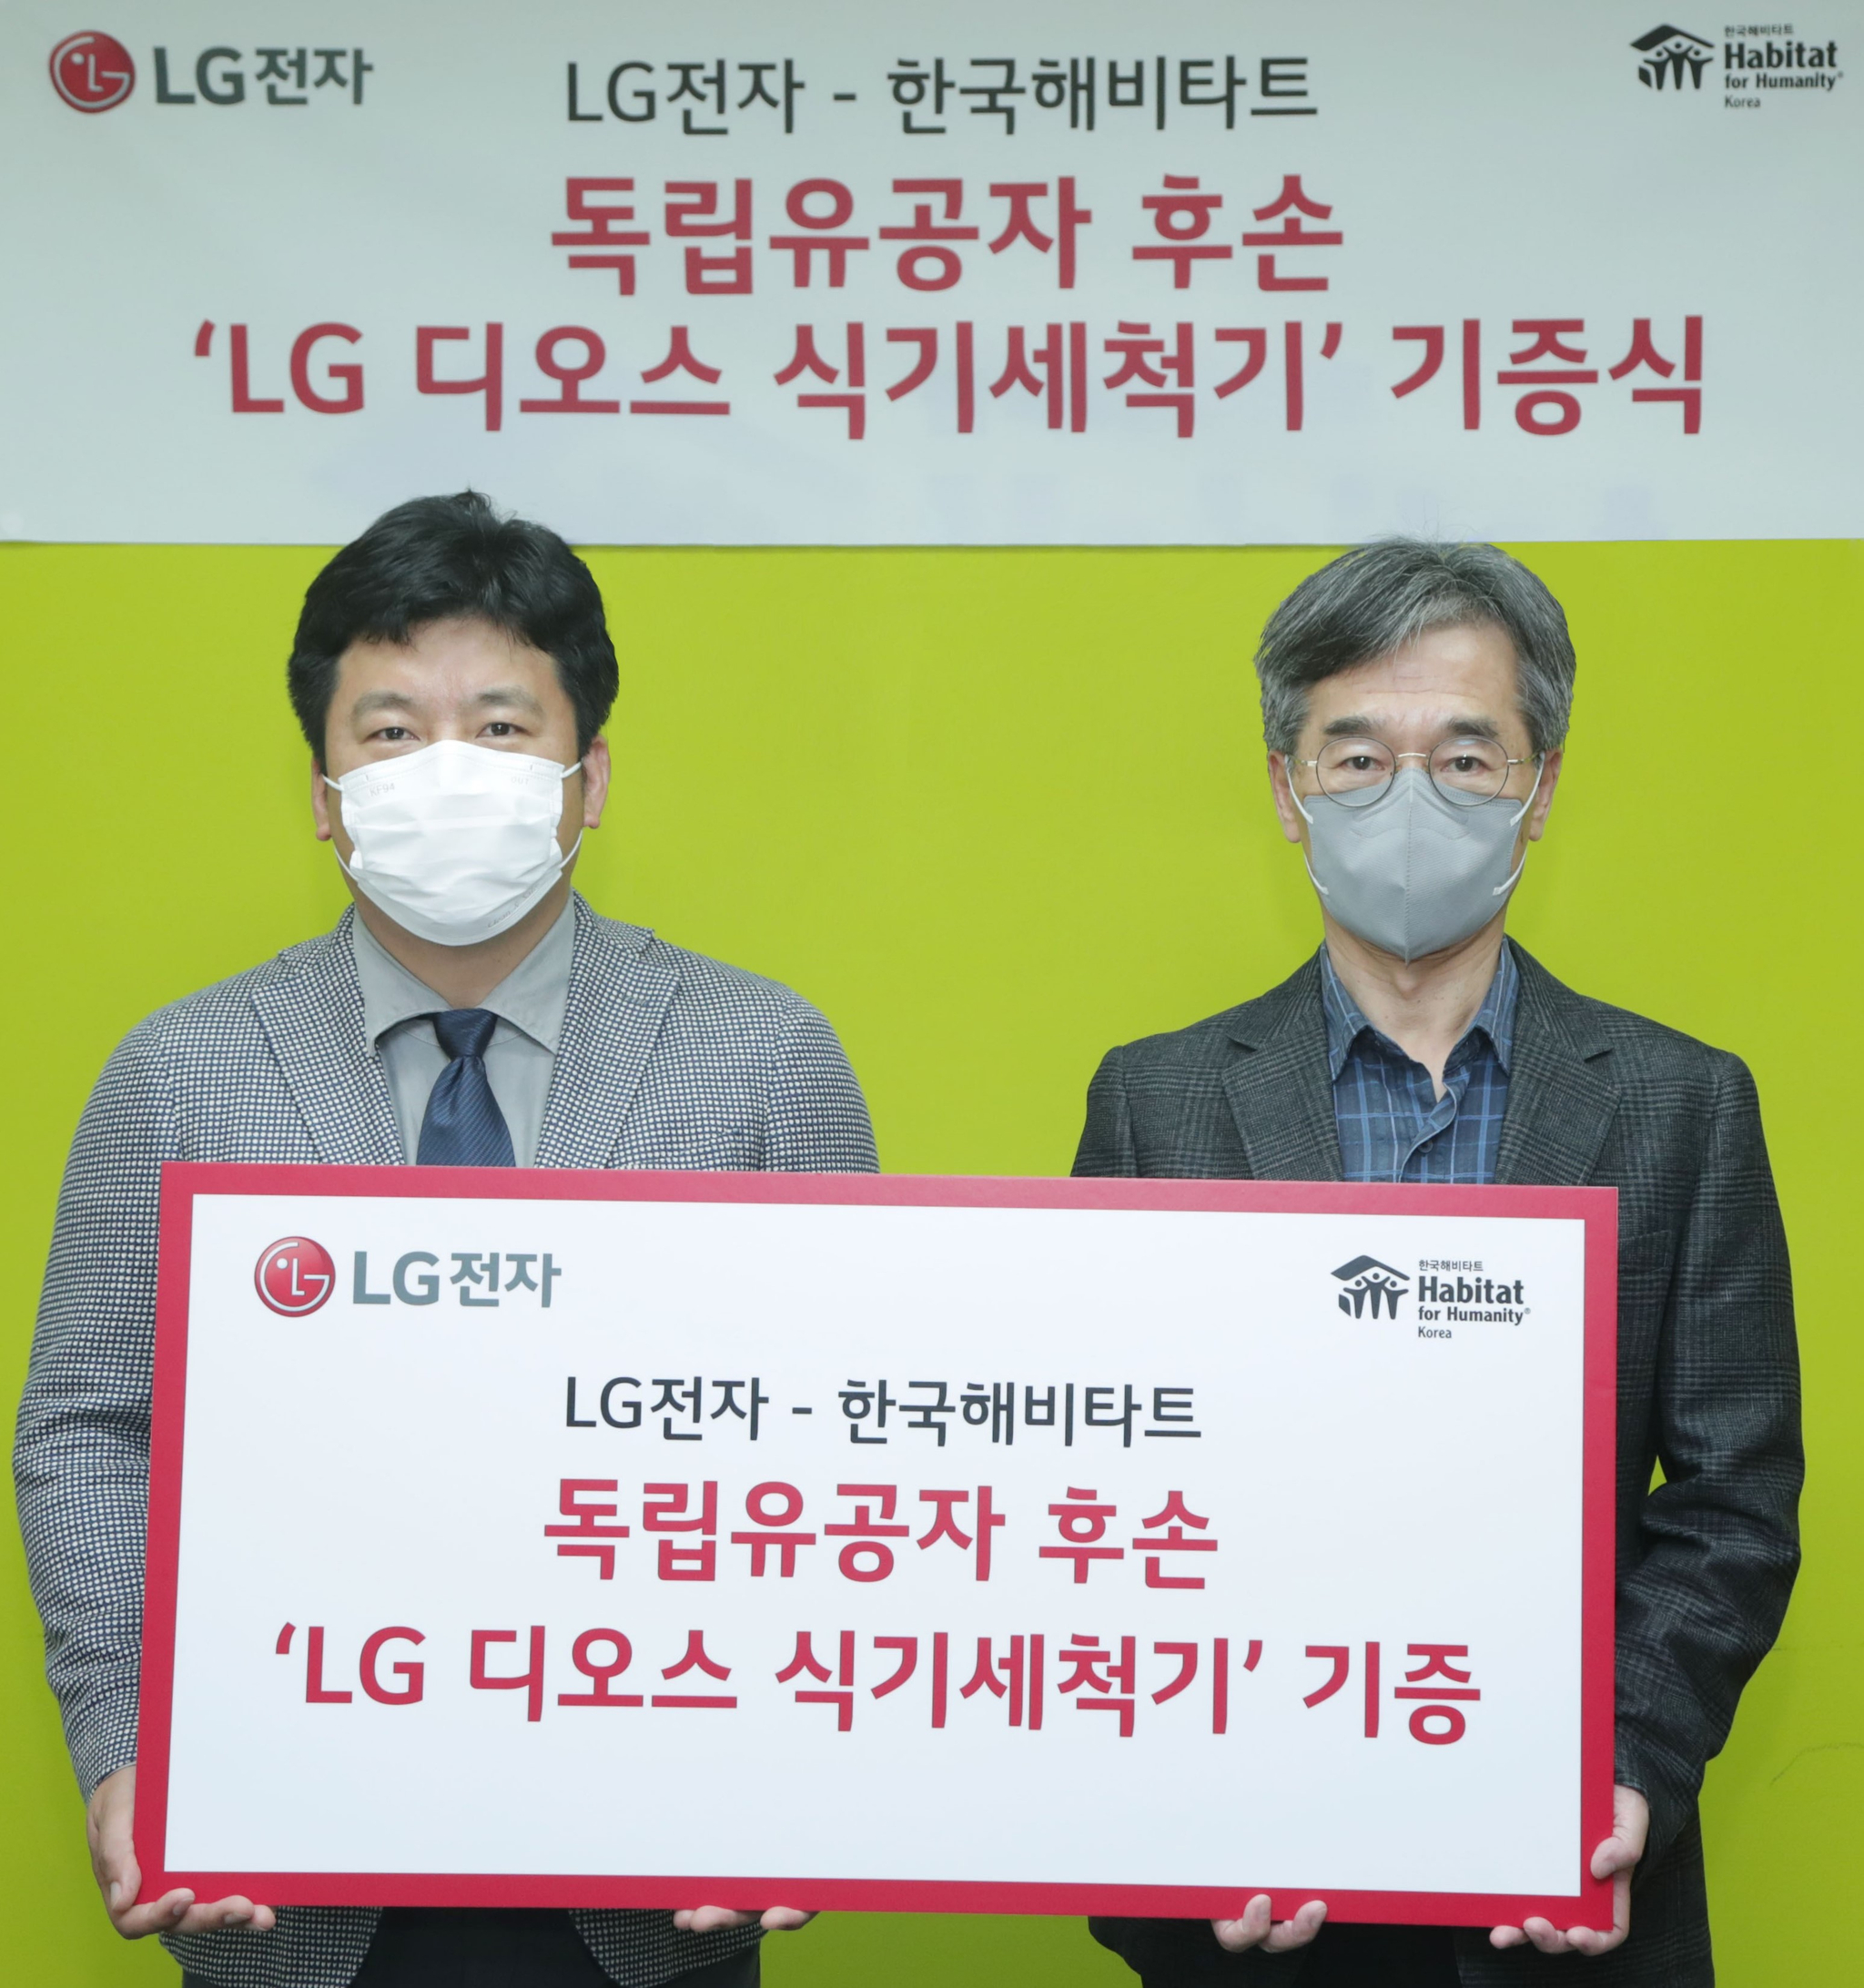 LG전자는 지난 10일 서울 중구에 위치한 비영리 단체 '한국해비타트'에서 한국해비타트 이광회 사무총장(오른쪽), LG전자 키친어플라이언스마케팅담당 윤성일 상무 등이 참석한 가운데 ‘LG 디오스 식기세척기 기증식’을 열었다. 사진 LG전자